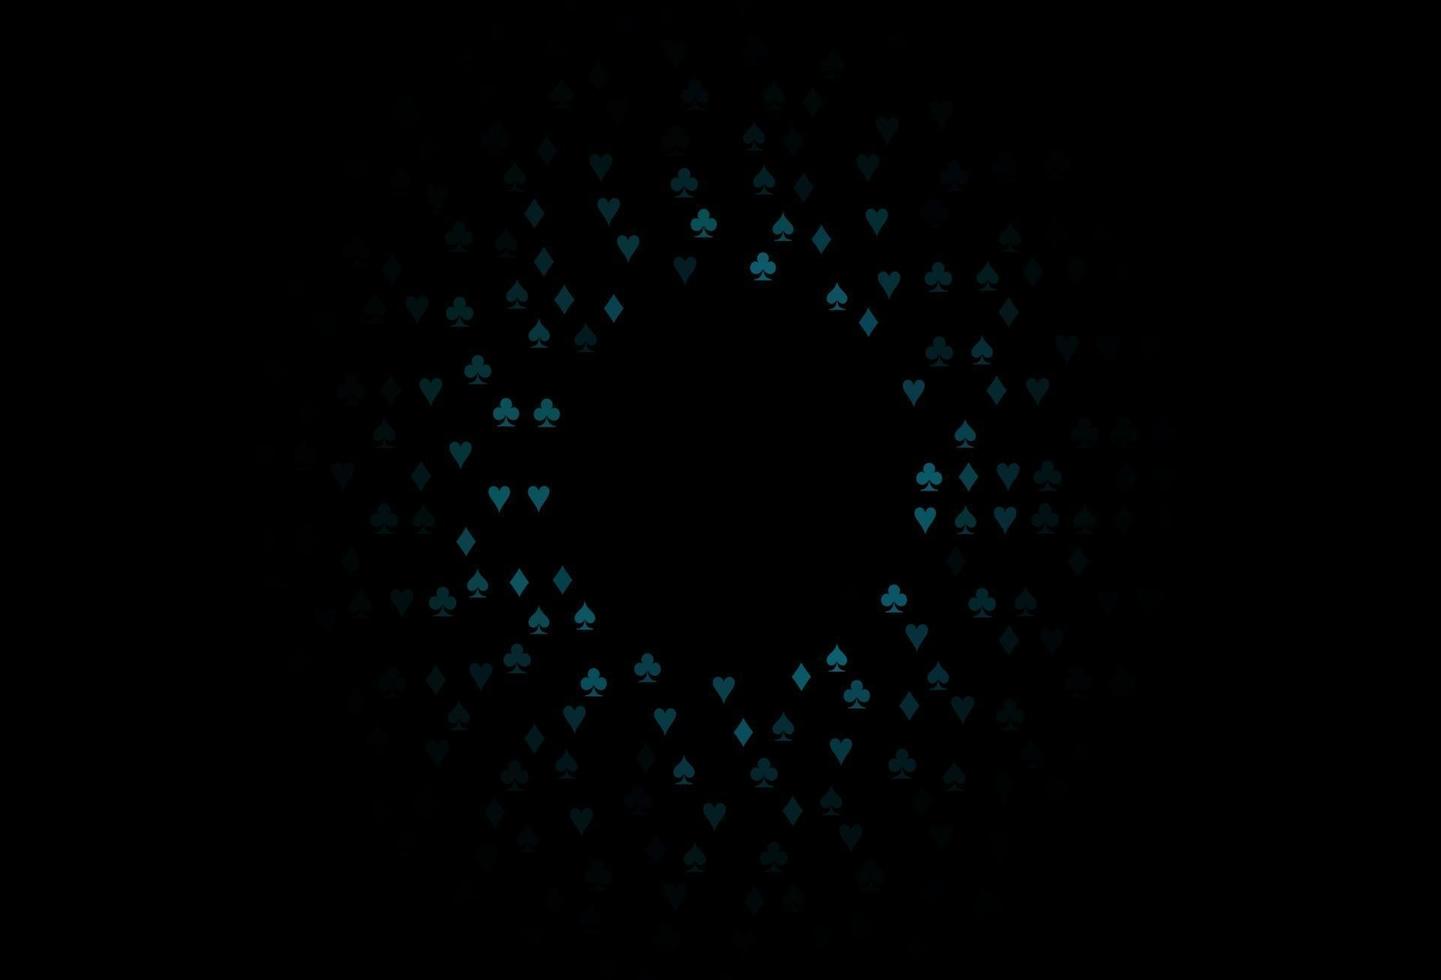 modelo de vetor azul escuro com símbolos de pôquer.